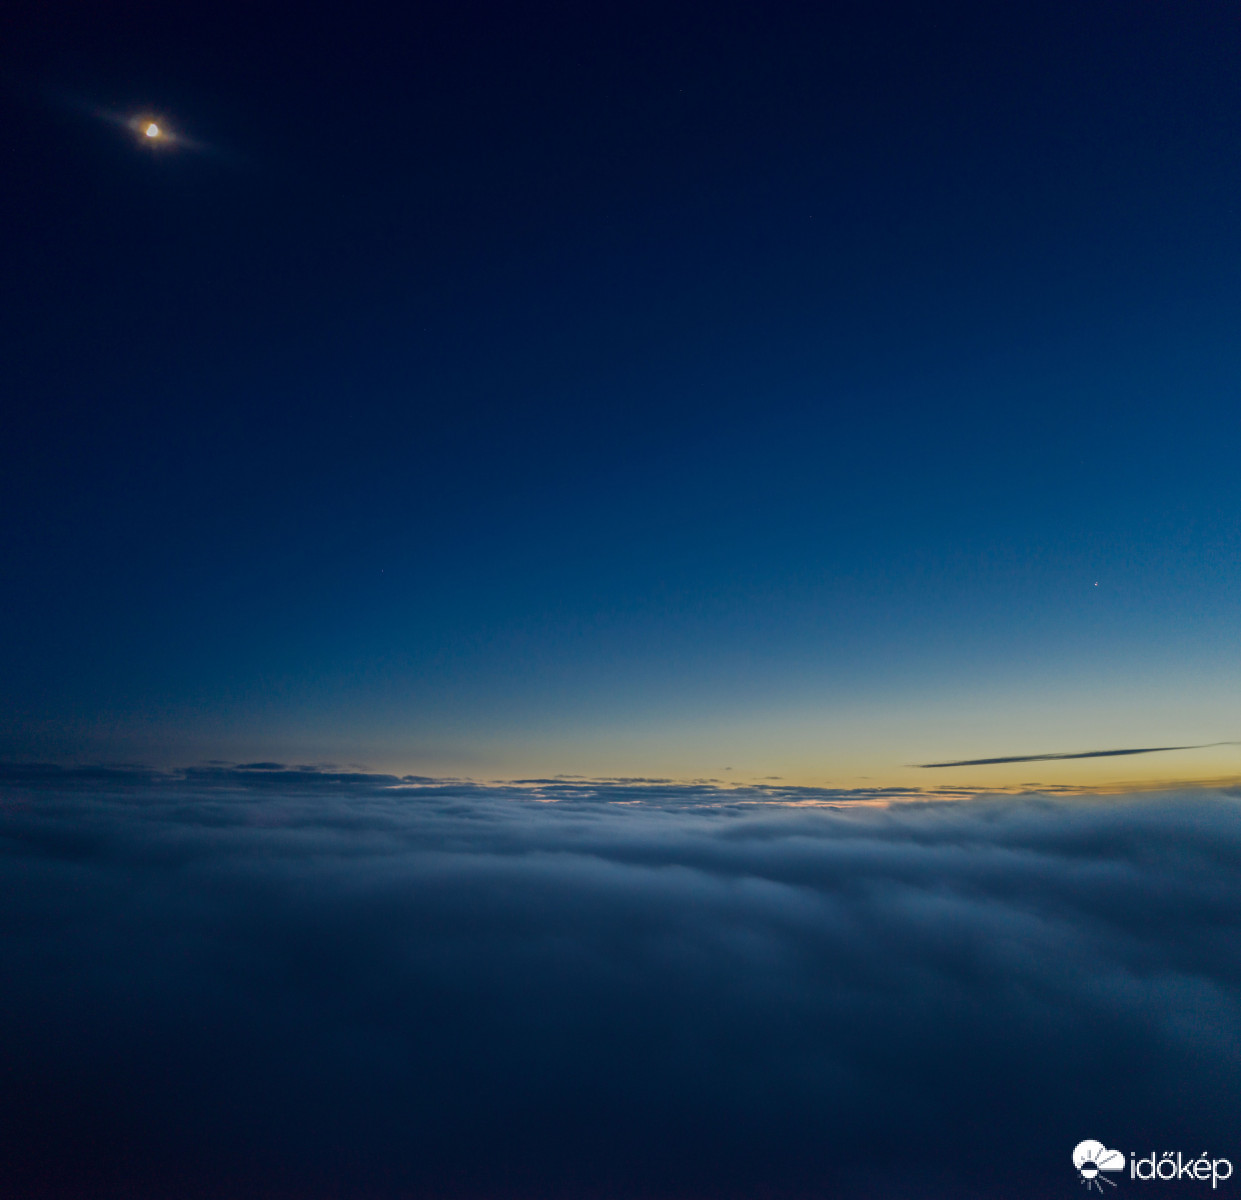 Novák Gábor drónt reptetett Dobogókőről – az eszköz 400 méternyi ködön átrepülve, körülbelül 1150 méter tengerszintfeletti magasságból többek között ezt a képet készítette